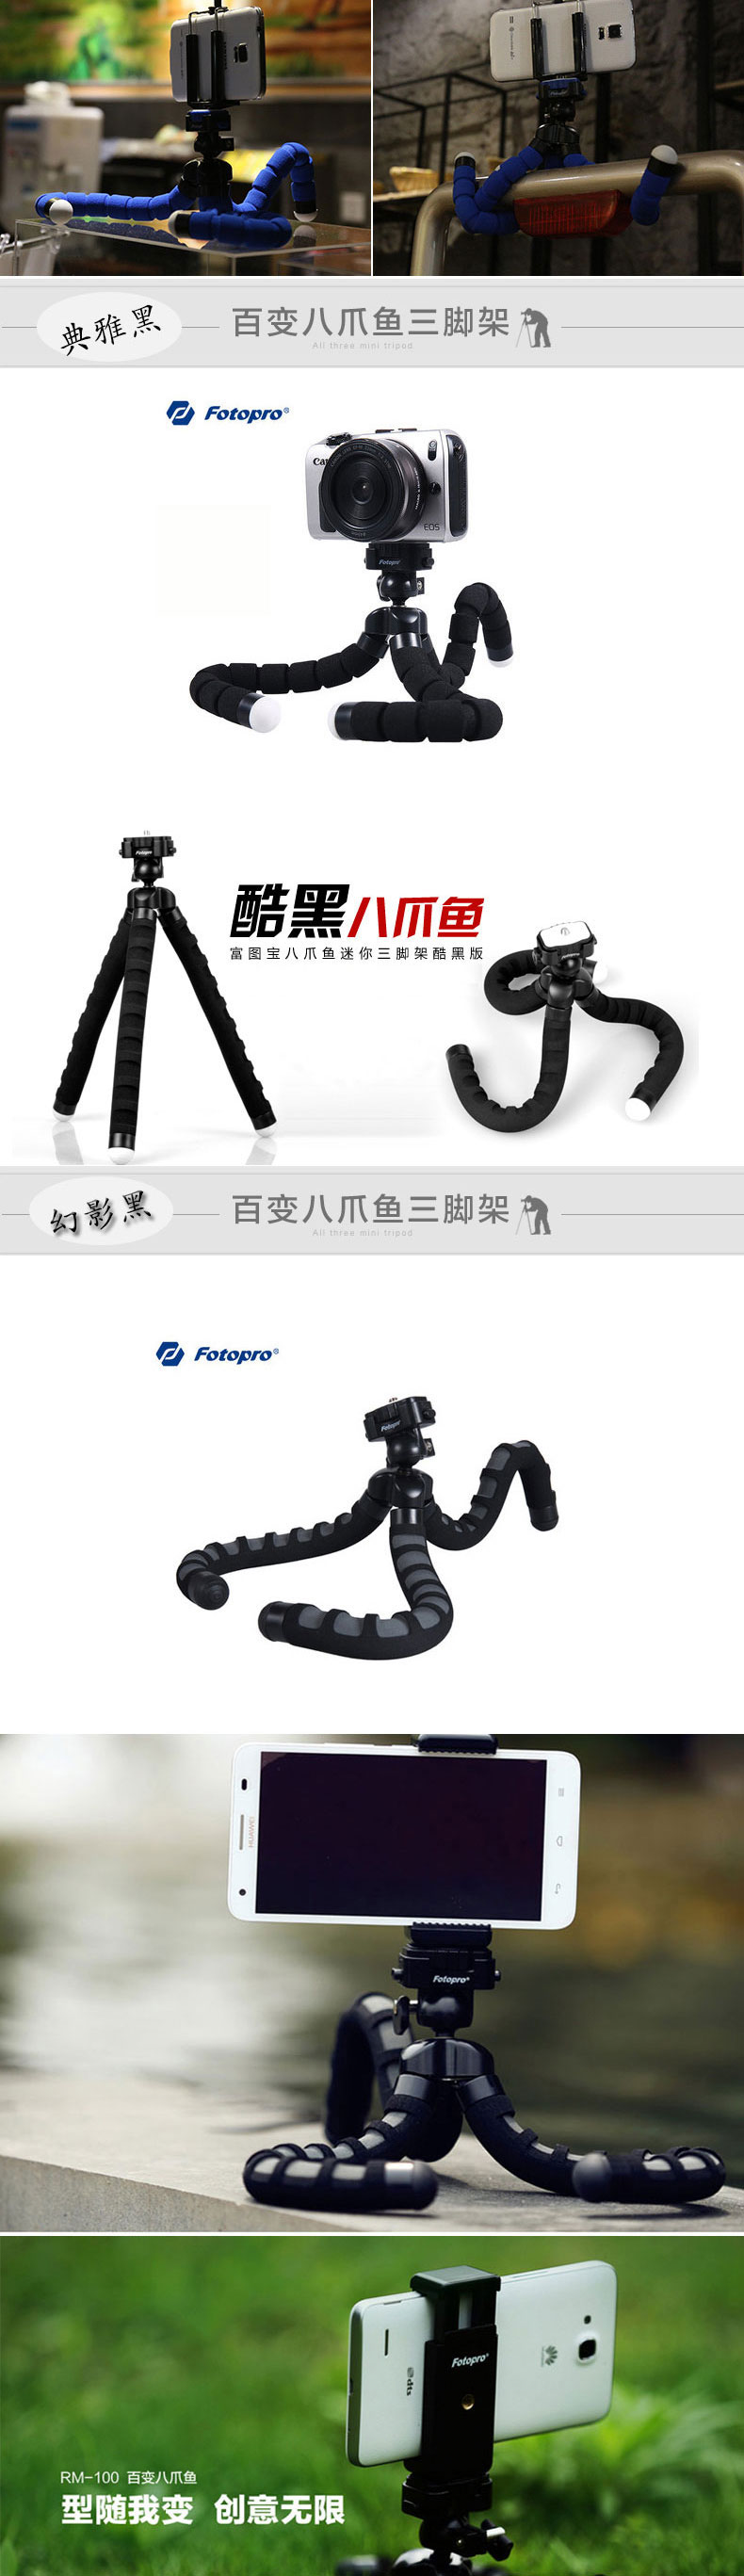 富图宝(Fotopro) RM-100 宝石蓝 便携八爪鱼懒人相机手机支架创意三脚架手机支架